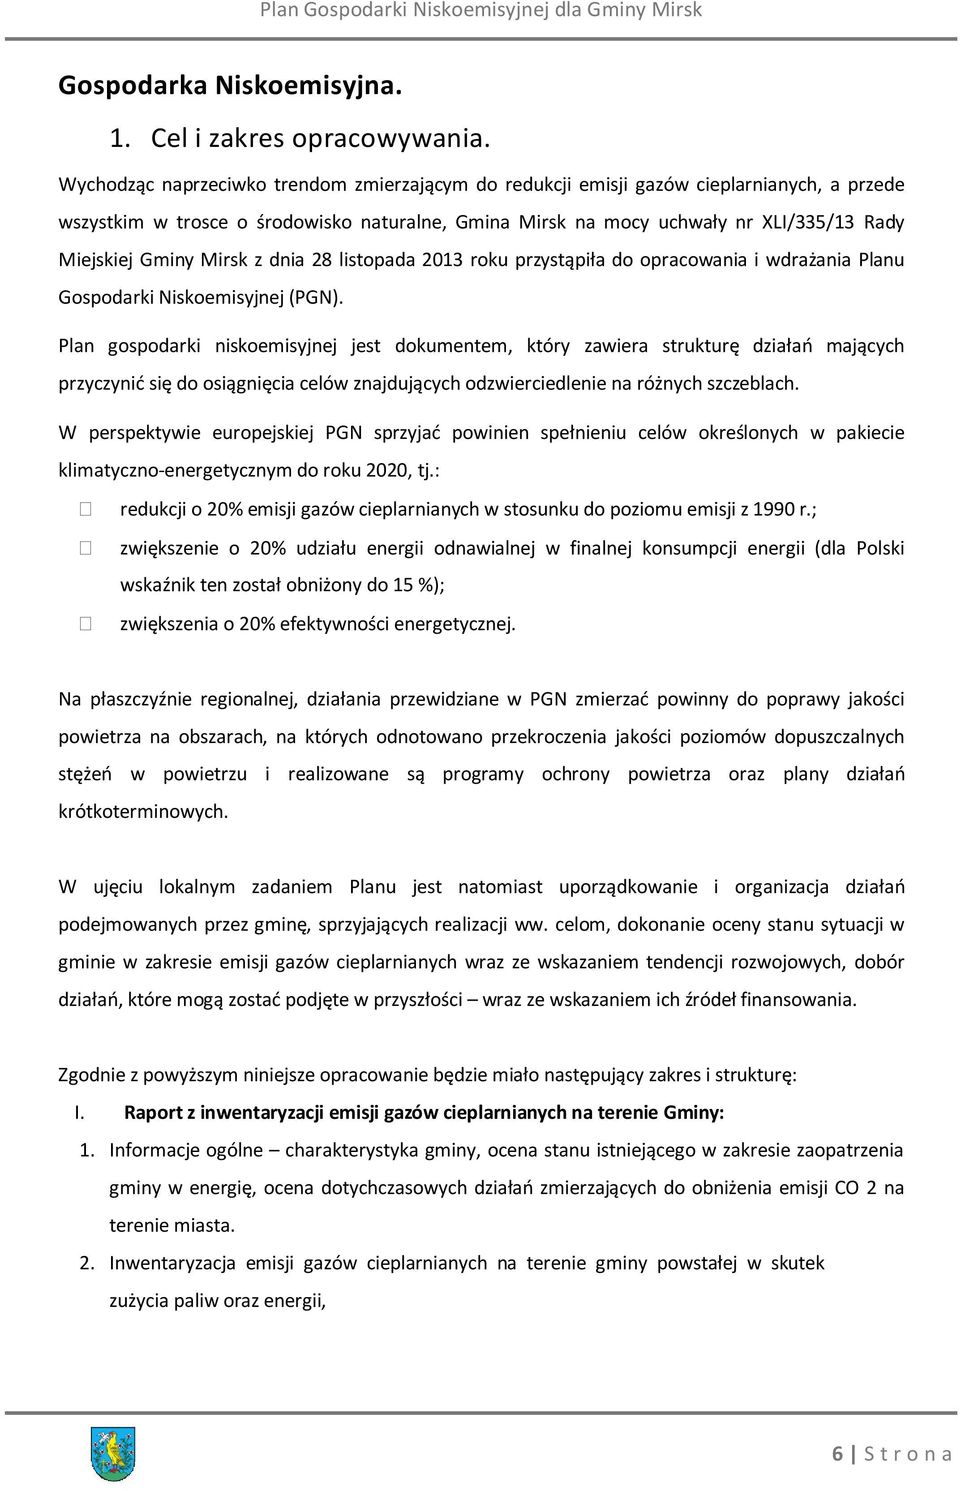 Mirsk z dnia 28 listopada 2013 roku przystąpiła do opracowania i wdrażania Planu Gospodarki Niskoemisyjnej (PGN).